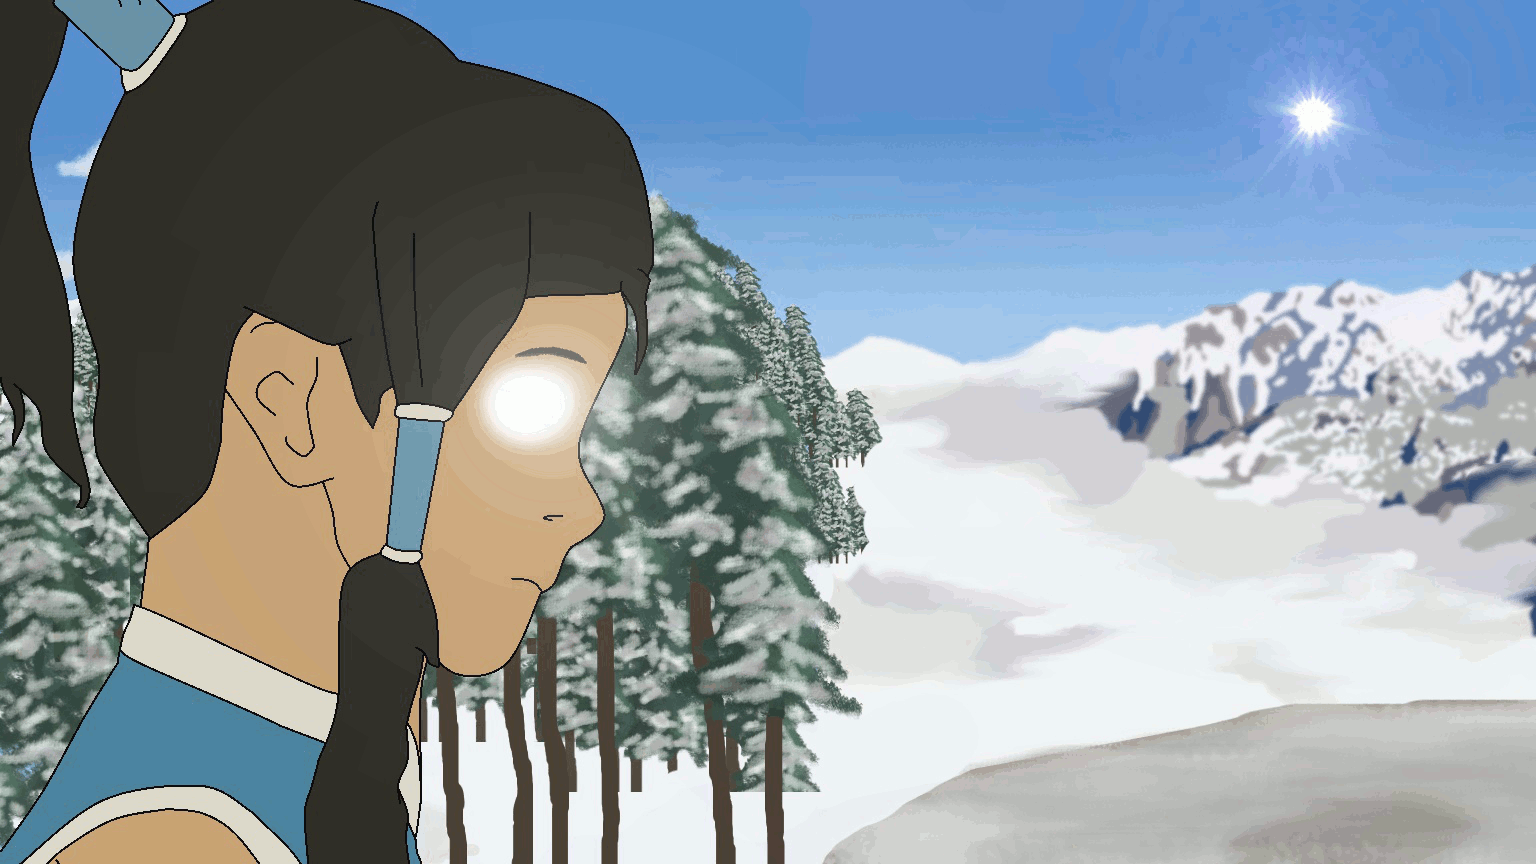 Аватар анимация. Гифка на аватар. Аанг снег. Animation avatar